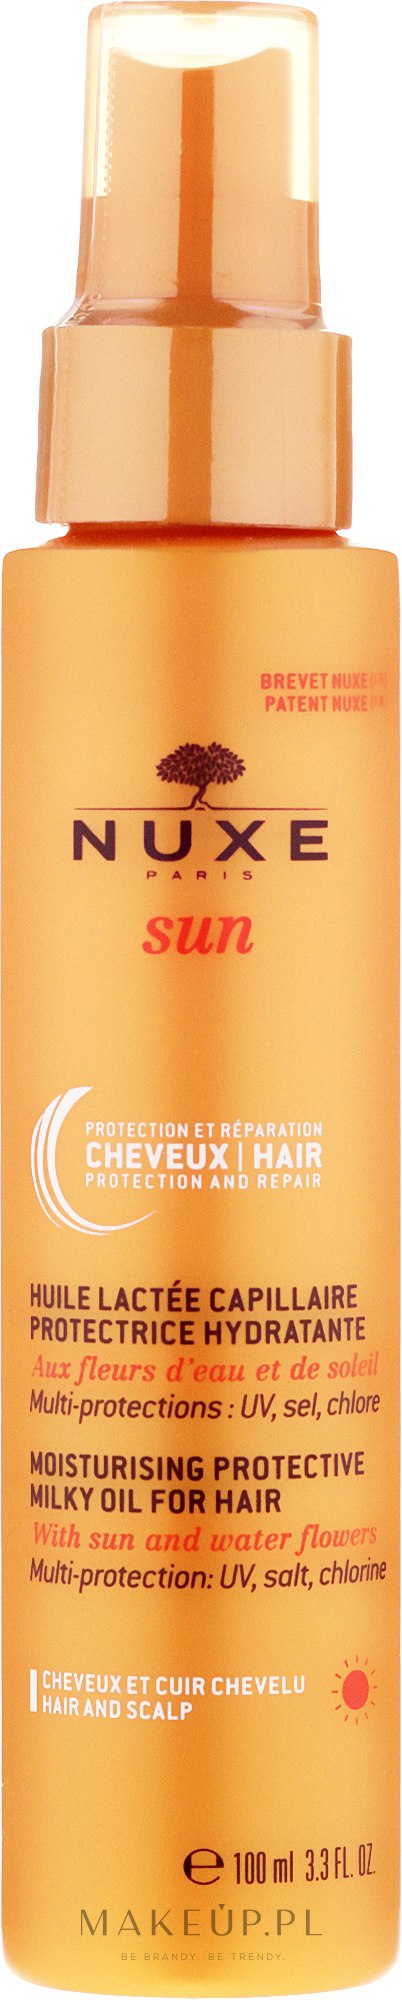 nuxe sun nawilżająco mleczny olejek do włosów wizaz